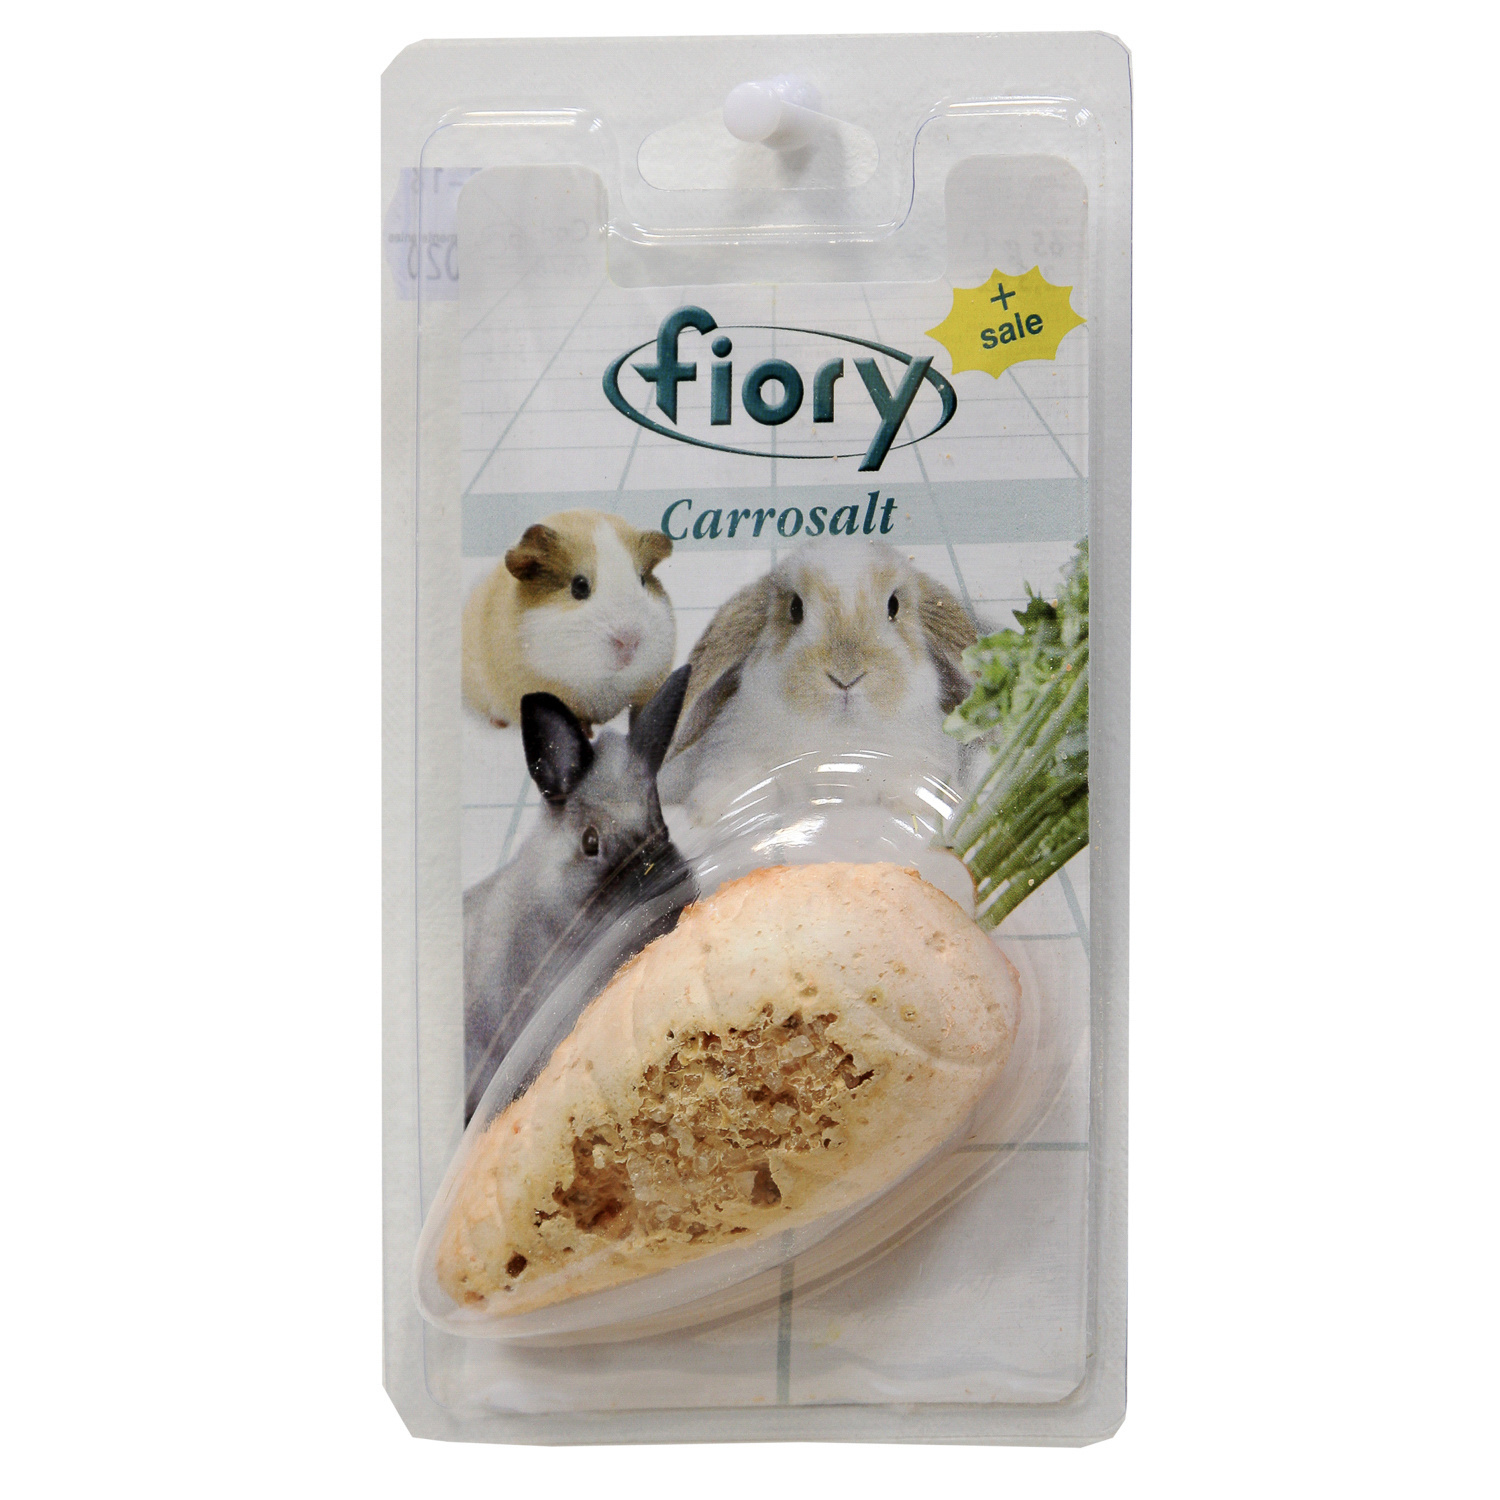 Fiory био-камень для грызунов, с солью в форме моркови (65 г) Fiory био-камень для грызунов, с солью в форме моркови (65 г) - фото 1